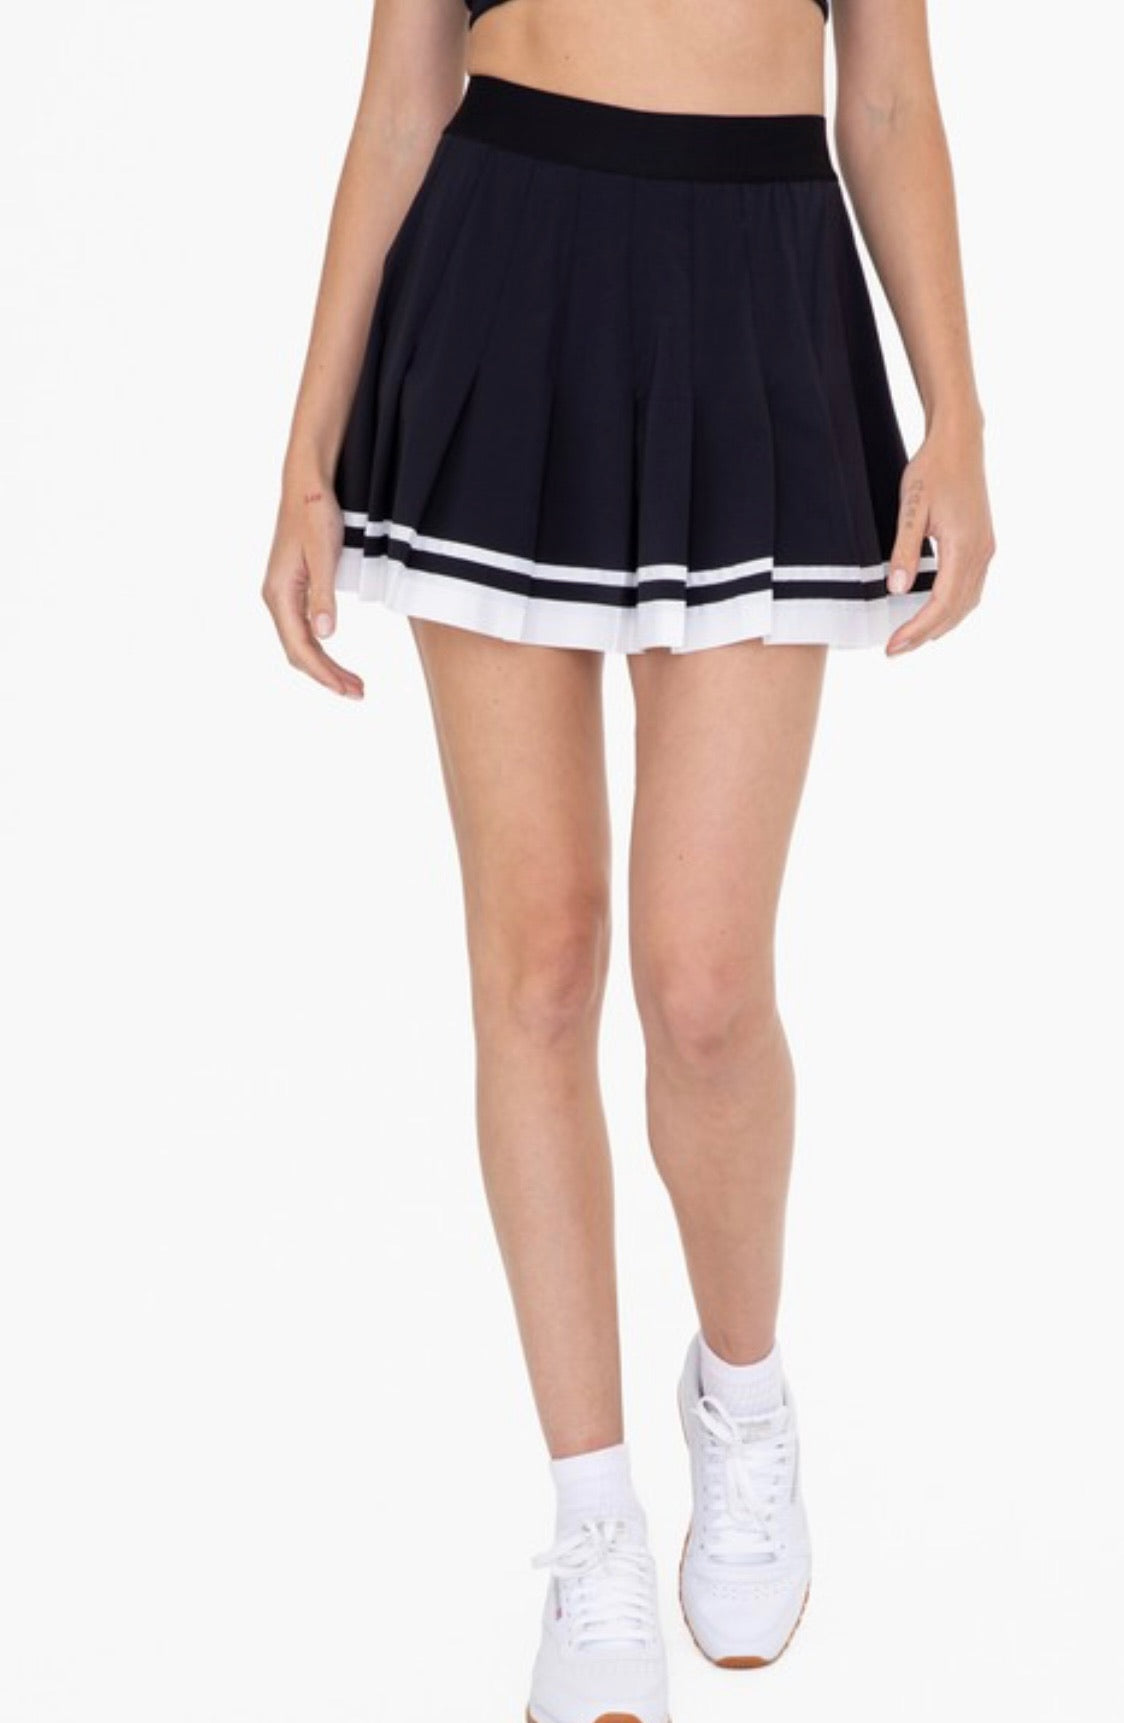 Black & White Tennis Skirt